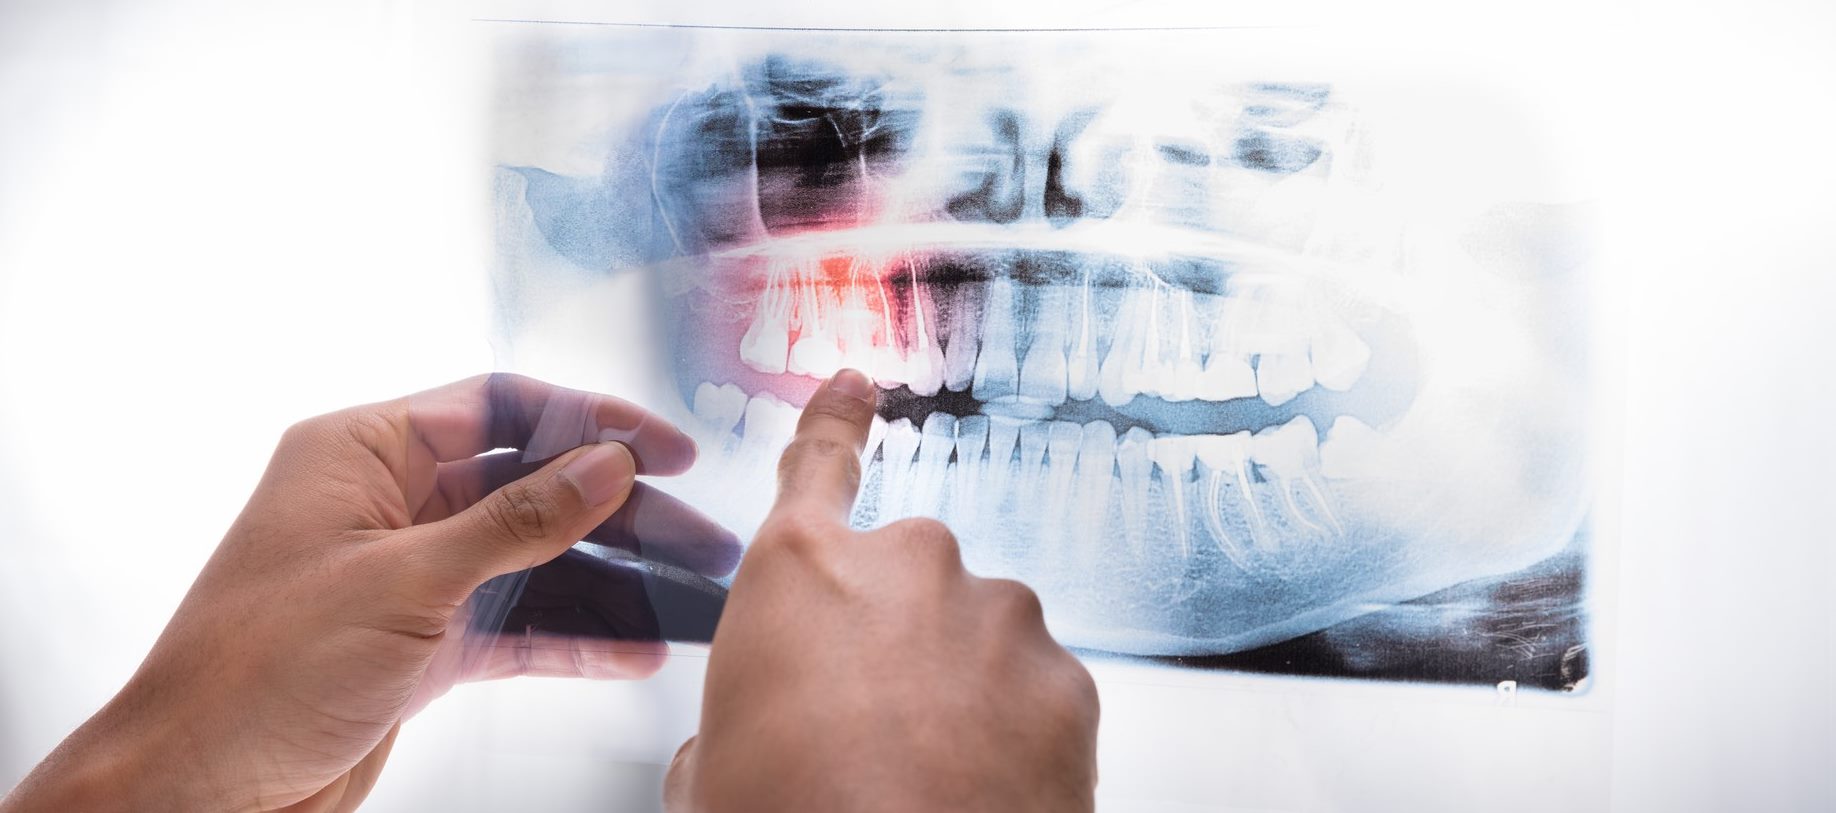 3D Dental Imaging at Yuma Smiles!